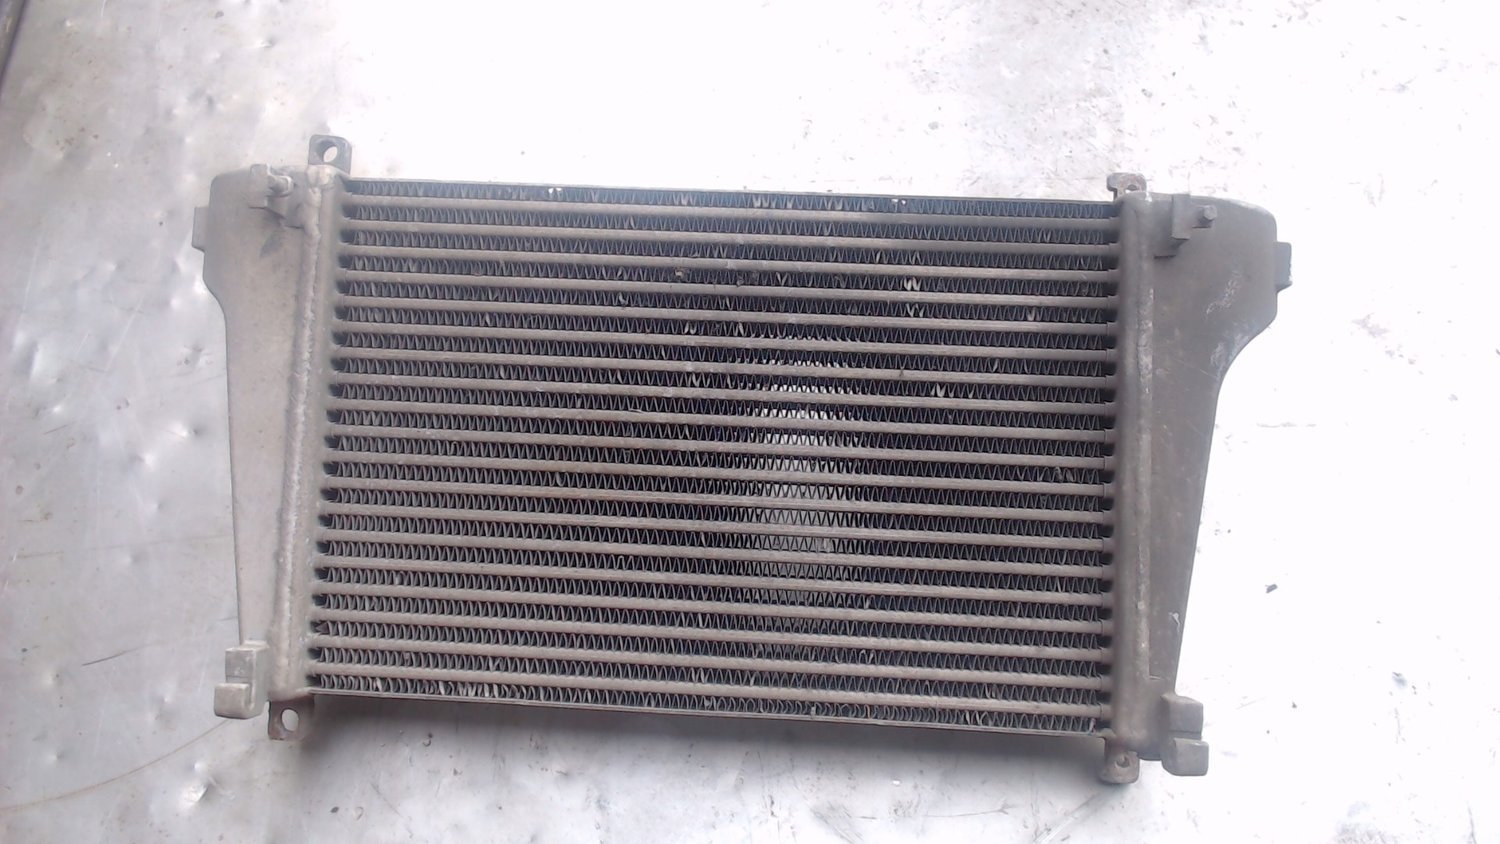 Купить радиатор интеркулера. Радиатор DAF lf45. 42n-03-11780 радиатор. Радиатор интеркулера Deutz. Радиатор интеркулера DAF.